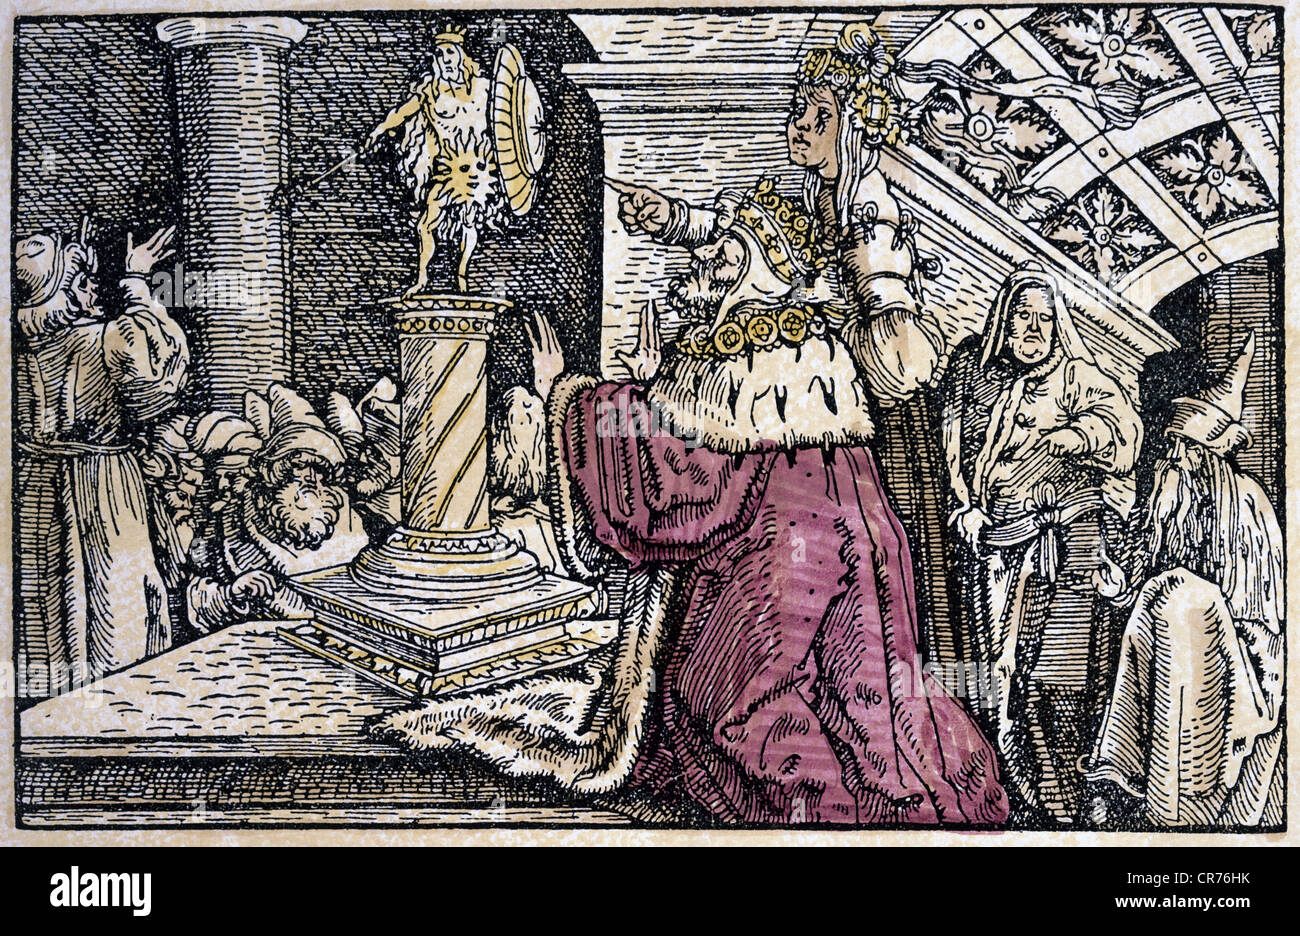 Solomon, König von Israel, ca. 971 - 931 v. Chr., halbe Länge, Moortochter zeigt auf ein altes Idol, das vom König geadelt wird, Erinnerung an die Weisheit, Der sich auf die Dummheit, den farbigen Holzschnitt des Petrarca-Meisters (1532 - 1620) in "Von der Artzney Bader Glueck" (De redeis utriusque fortunae 1344/1366) von Francesco Petrarca (1304-1374), ändern kann, Stockfoto